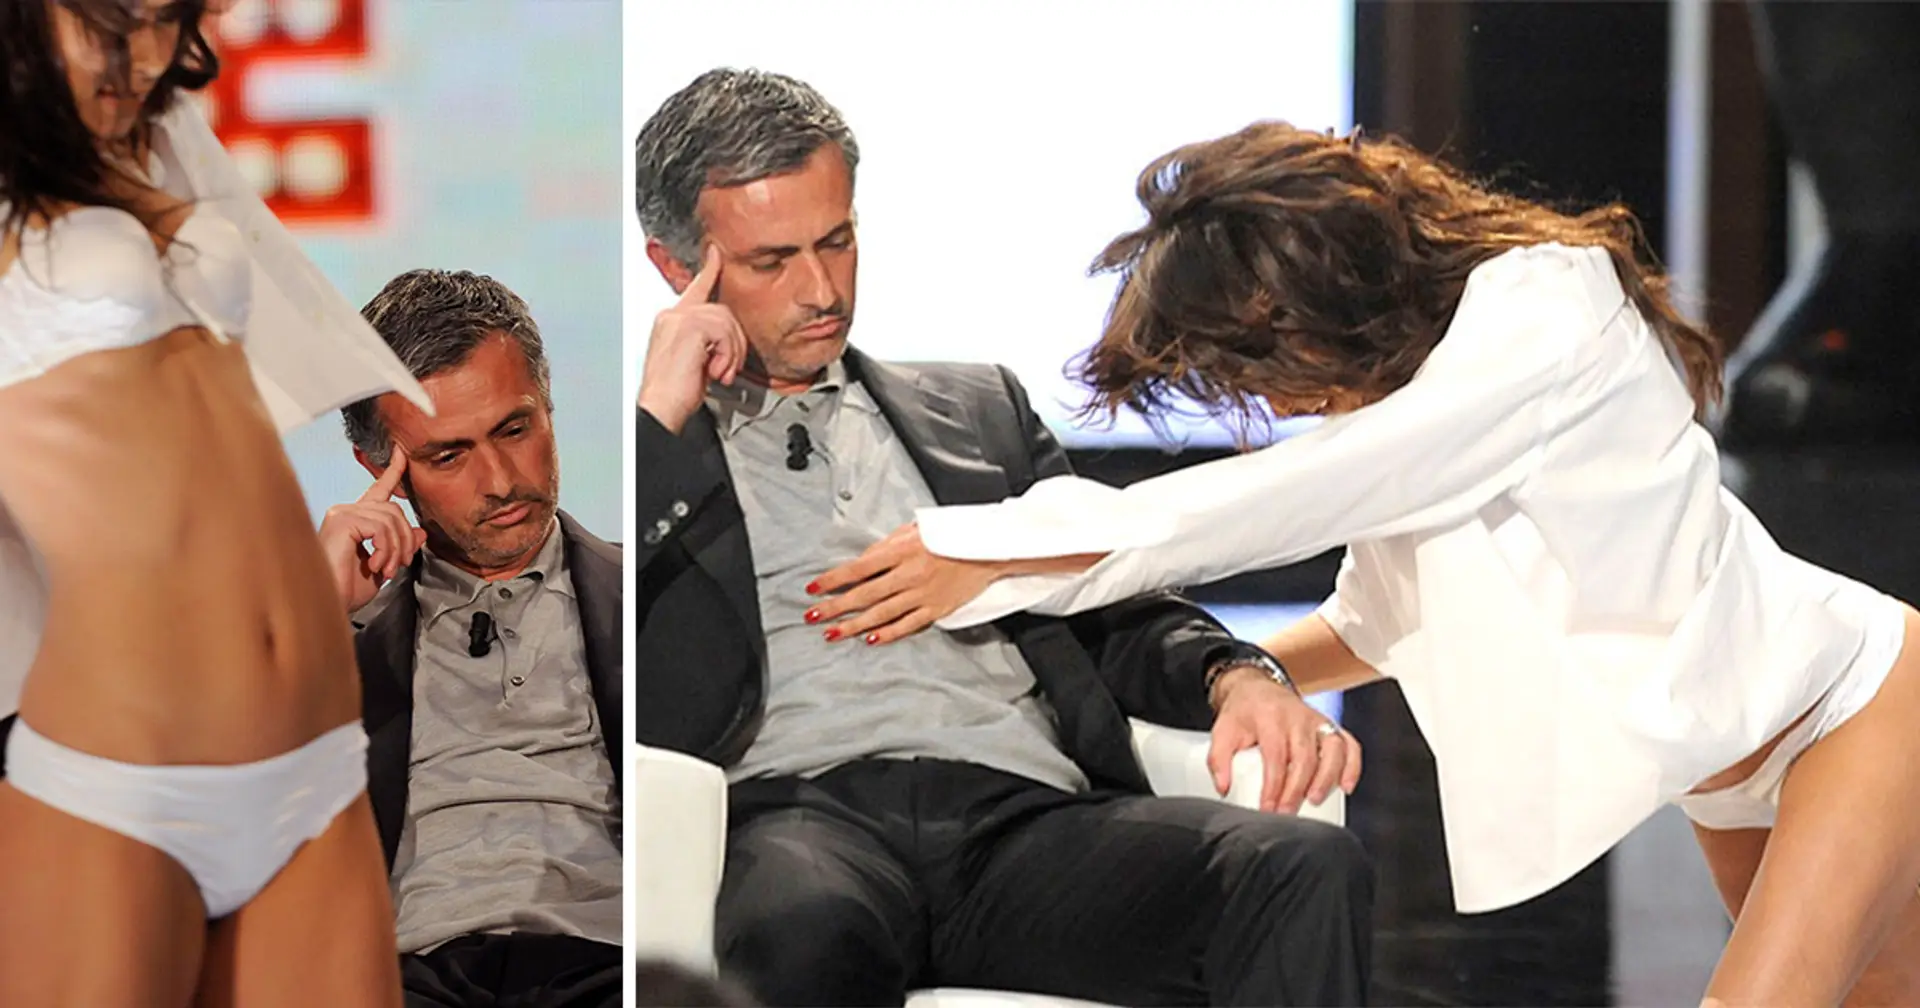 Quando Jose Mourinho cercava di non ridere mentre una donna poco vestita gli ballava attorno in diretta TV